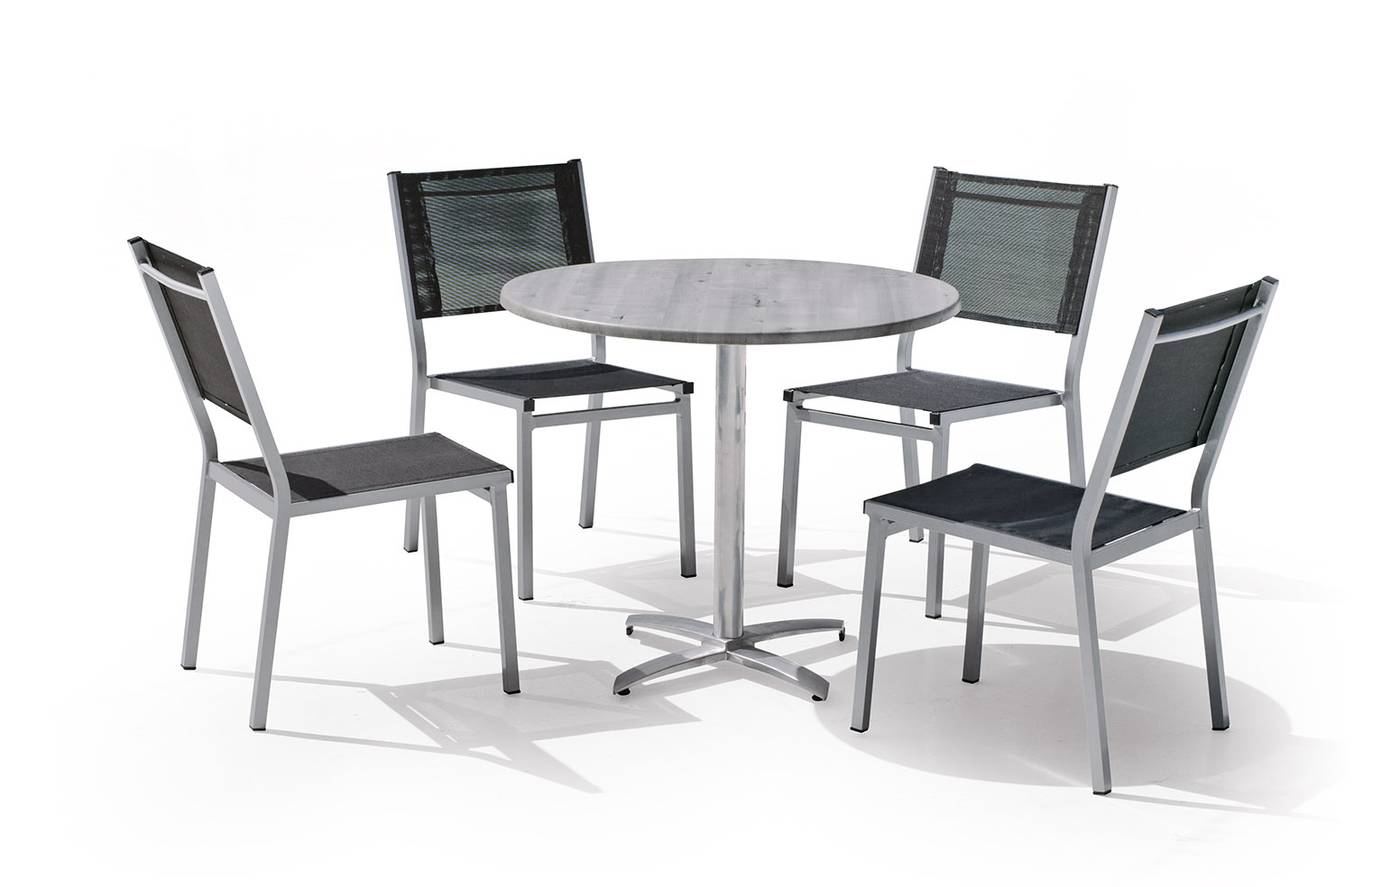 Conjunto aluminio: mesa redonda de 90 cm. con tablero de heverzaplus y 4 sillas de aluminio color plata y textilen color gris